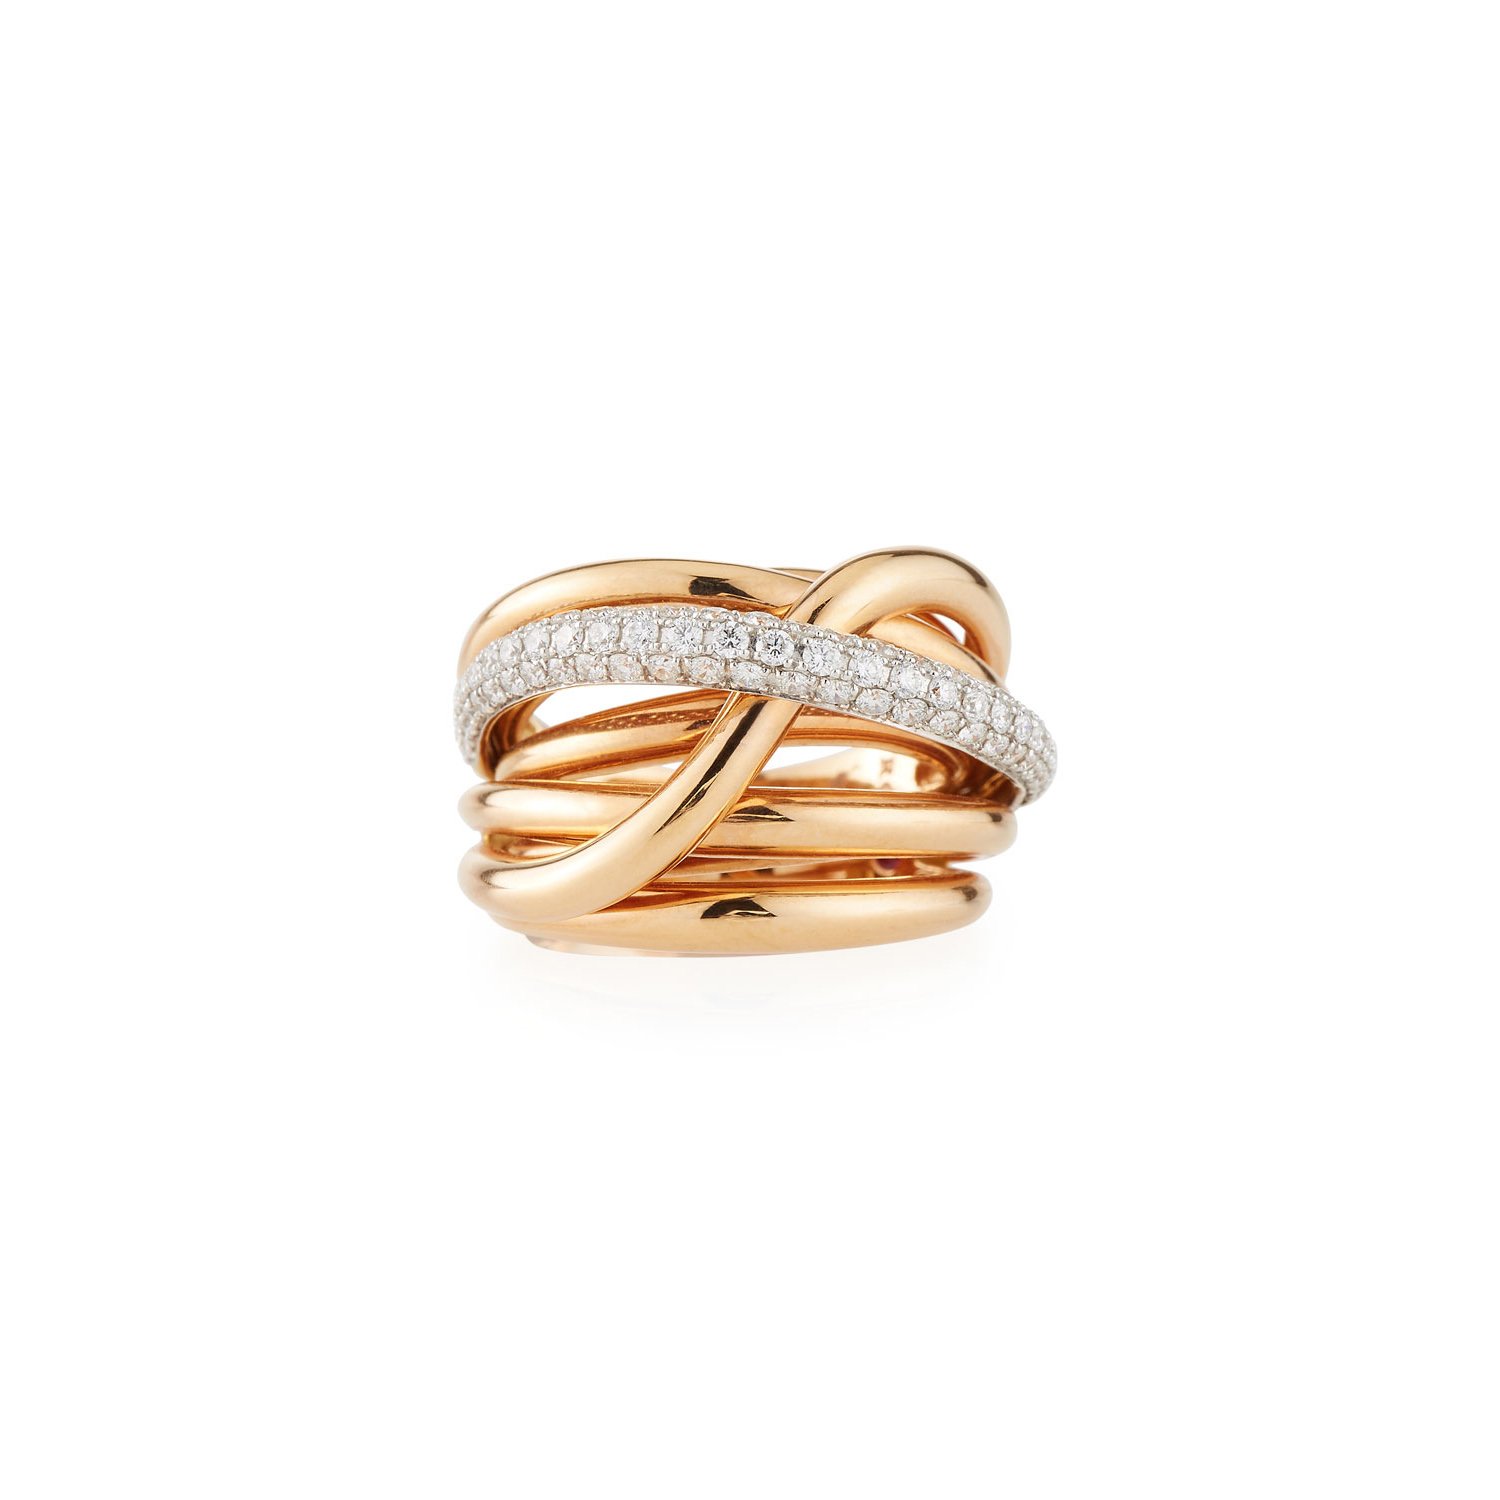 Velkoobchodní zakázková výroba šperků OEM/ODM z 18k růžového zlata s diamantovým překrývajícím se prstenem pro ženy, návrhářka jemných šperků